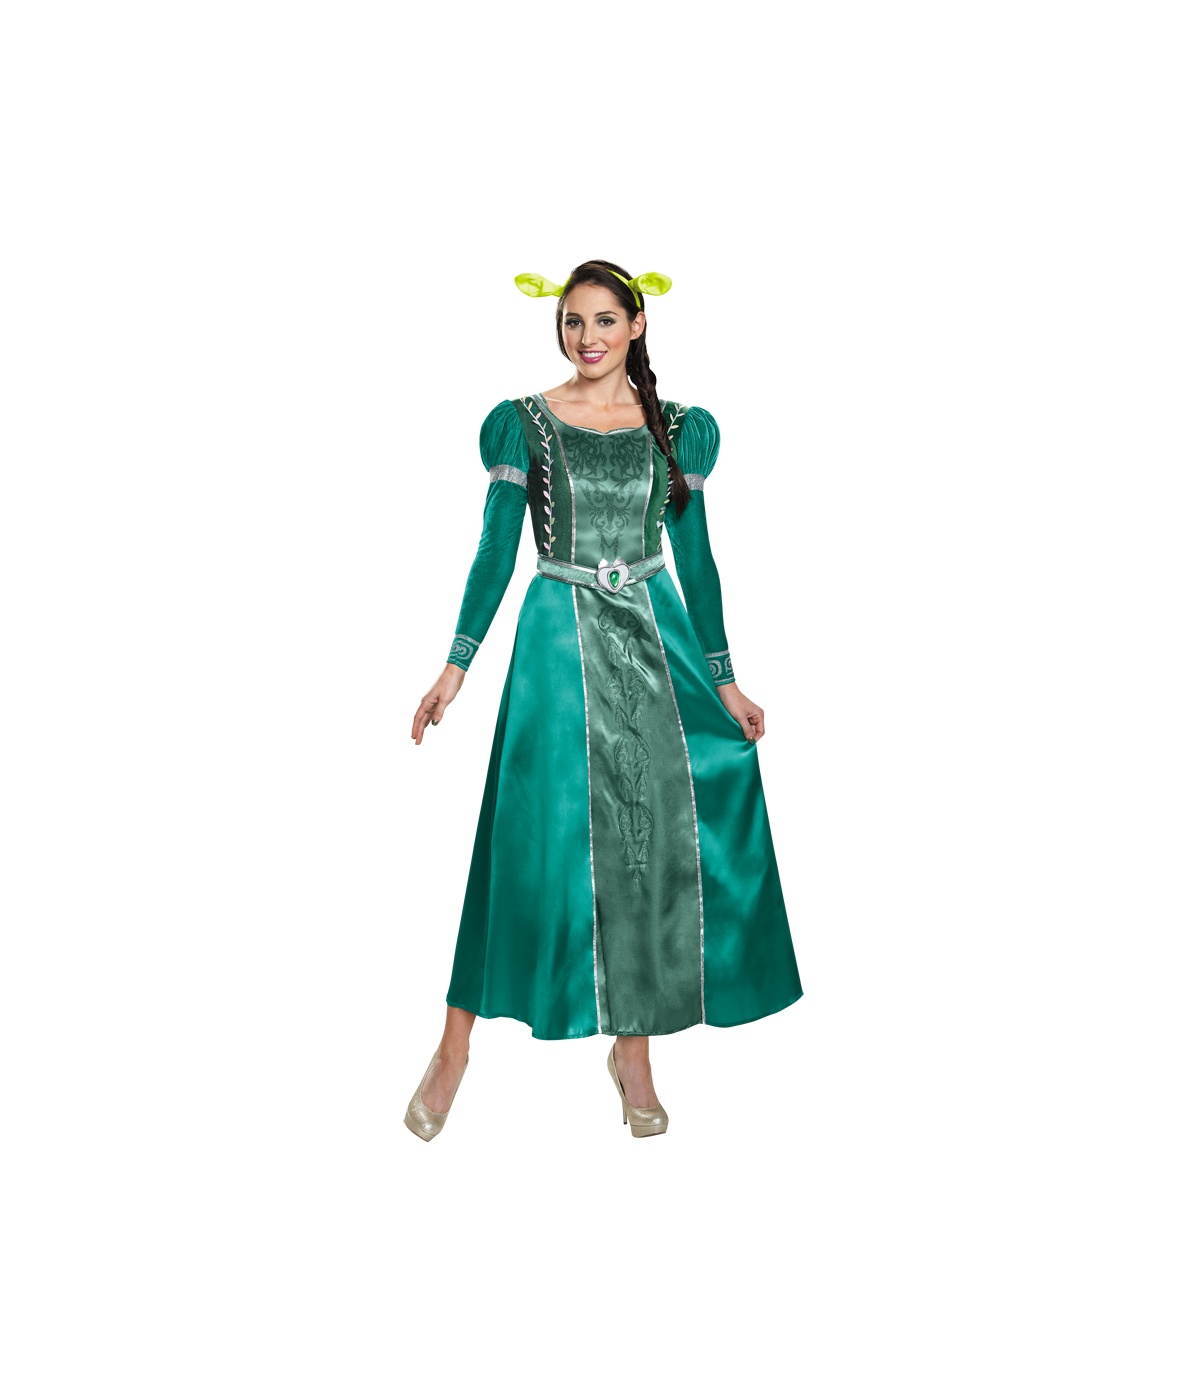  Womens Princess Fiona Costume